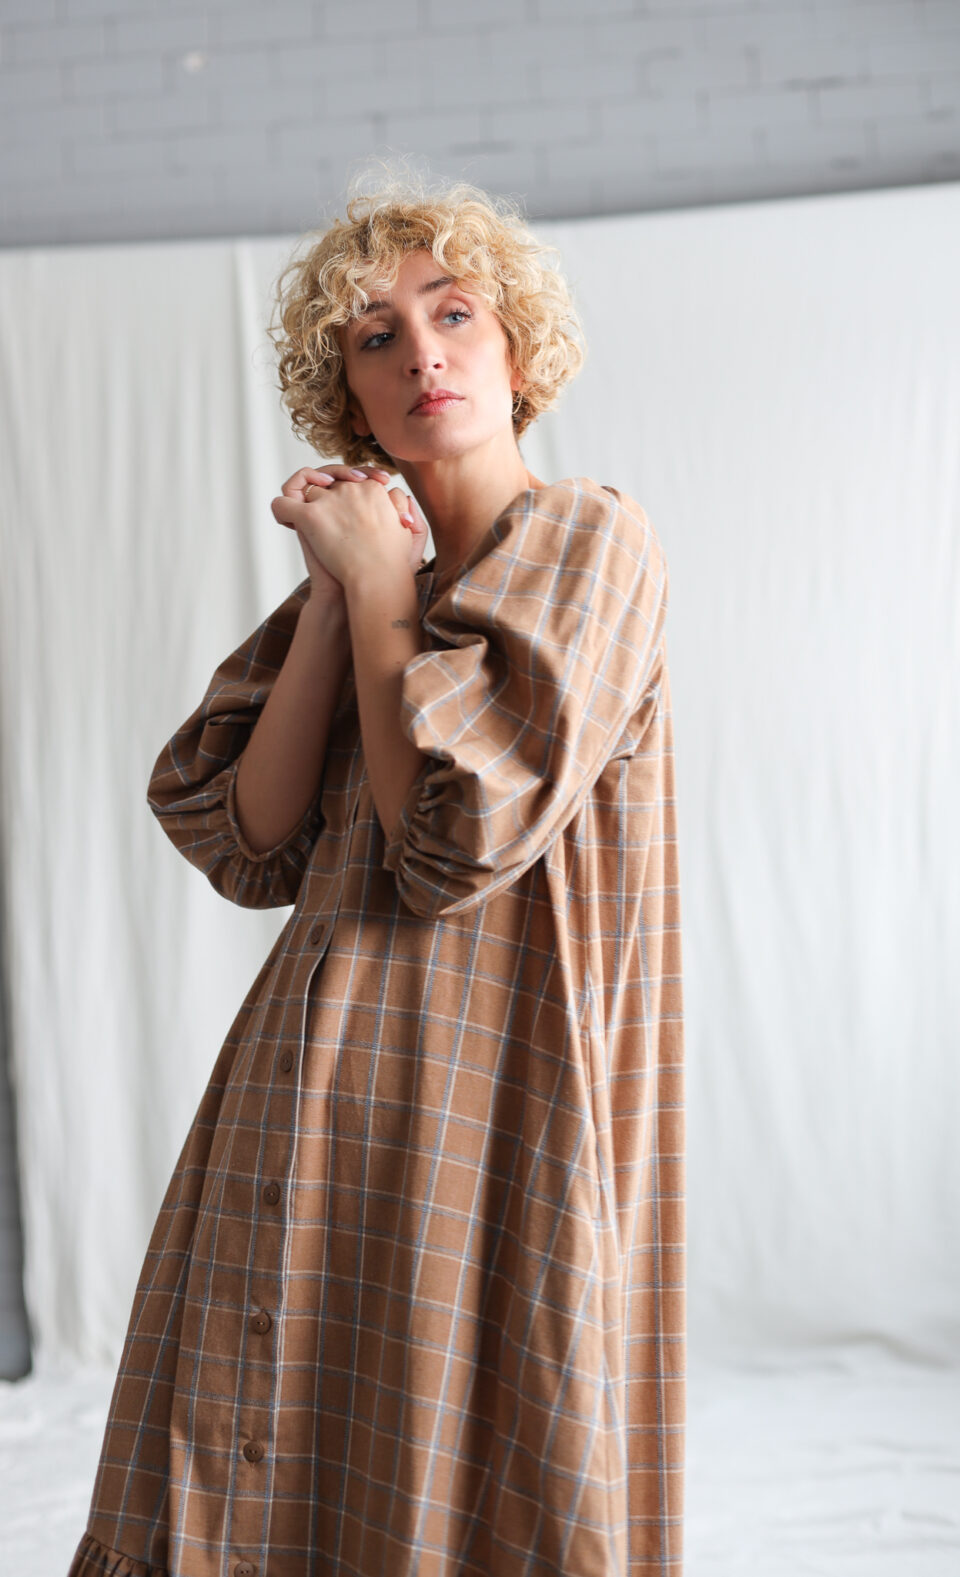 Flowy ruffled skirt brushed plaid cotton MAXI dress CHLOE | Dress | Sustainable clothing | OffOn clothing